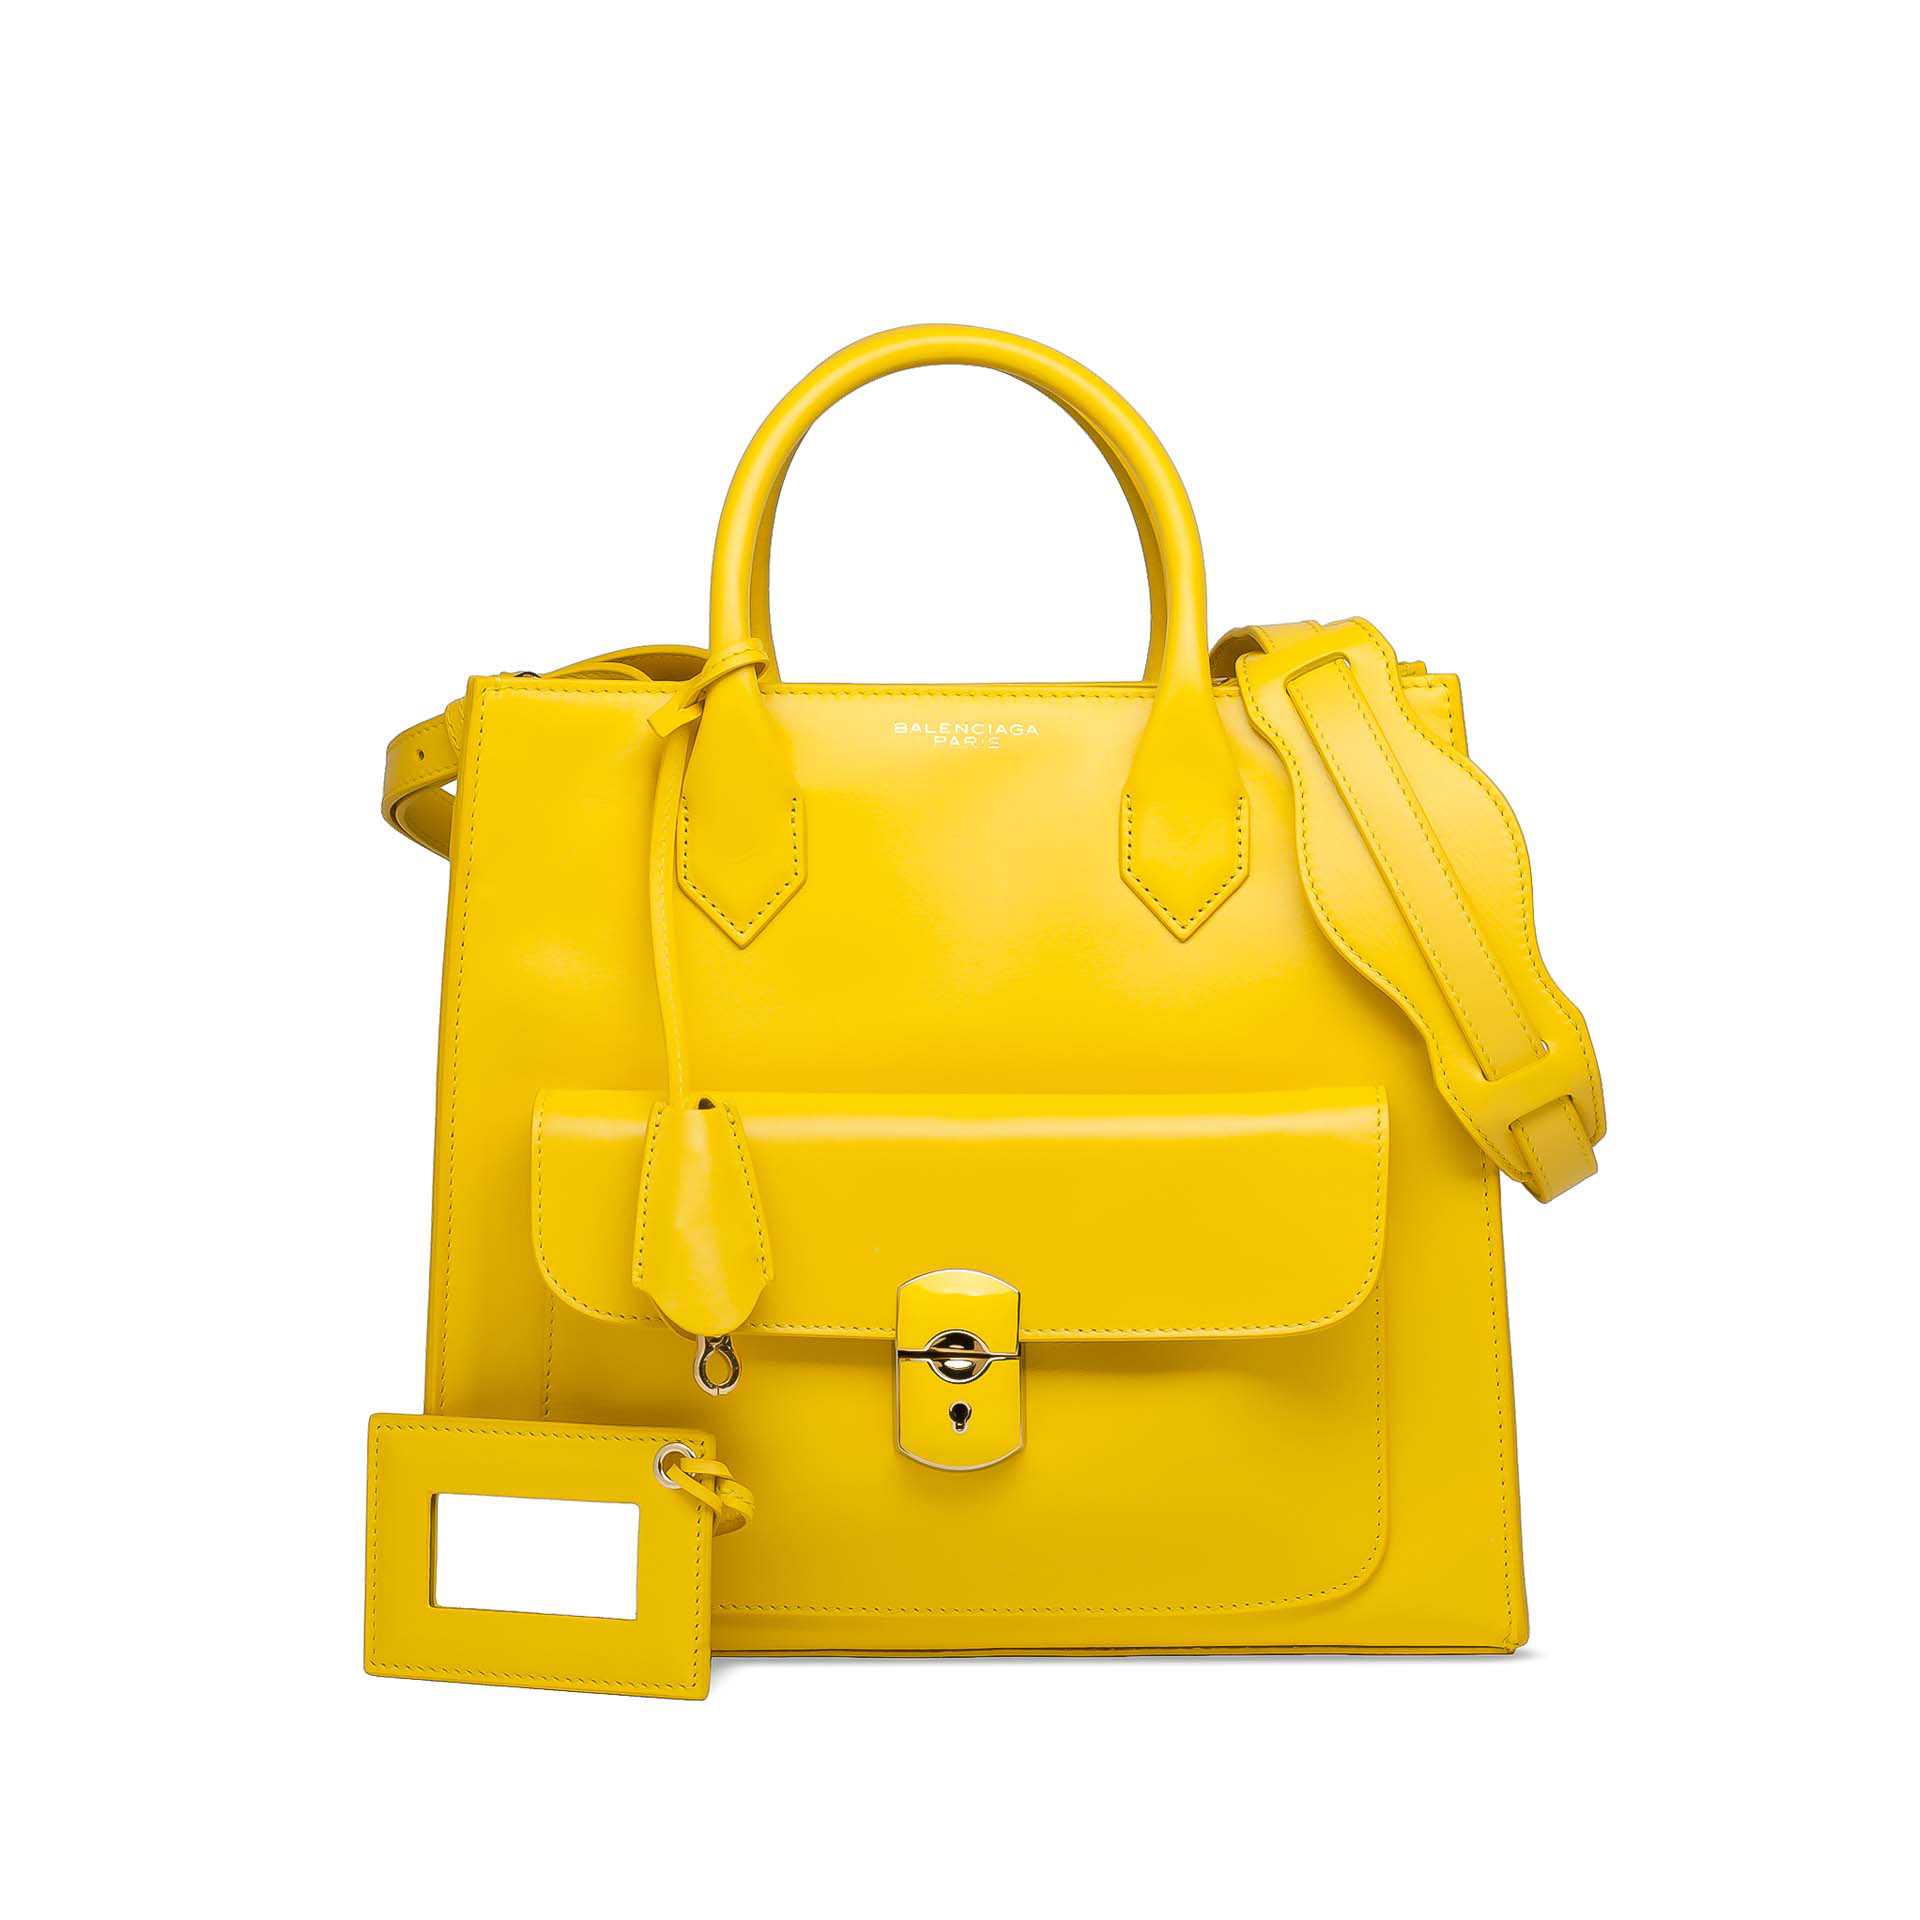 Balenciaga Spring Bag Collection - Spotted Fashion